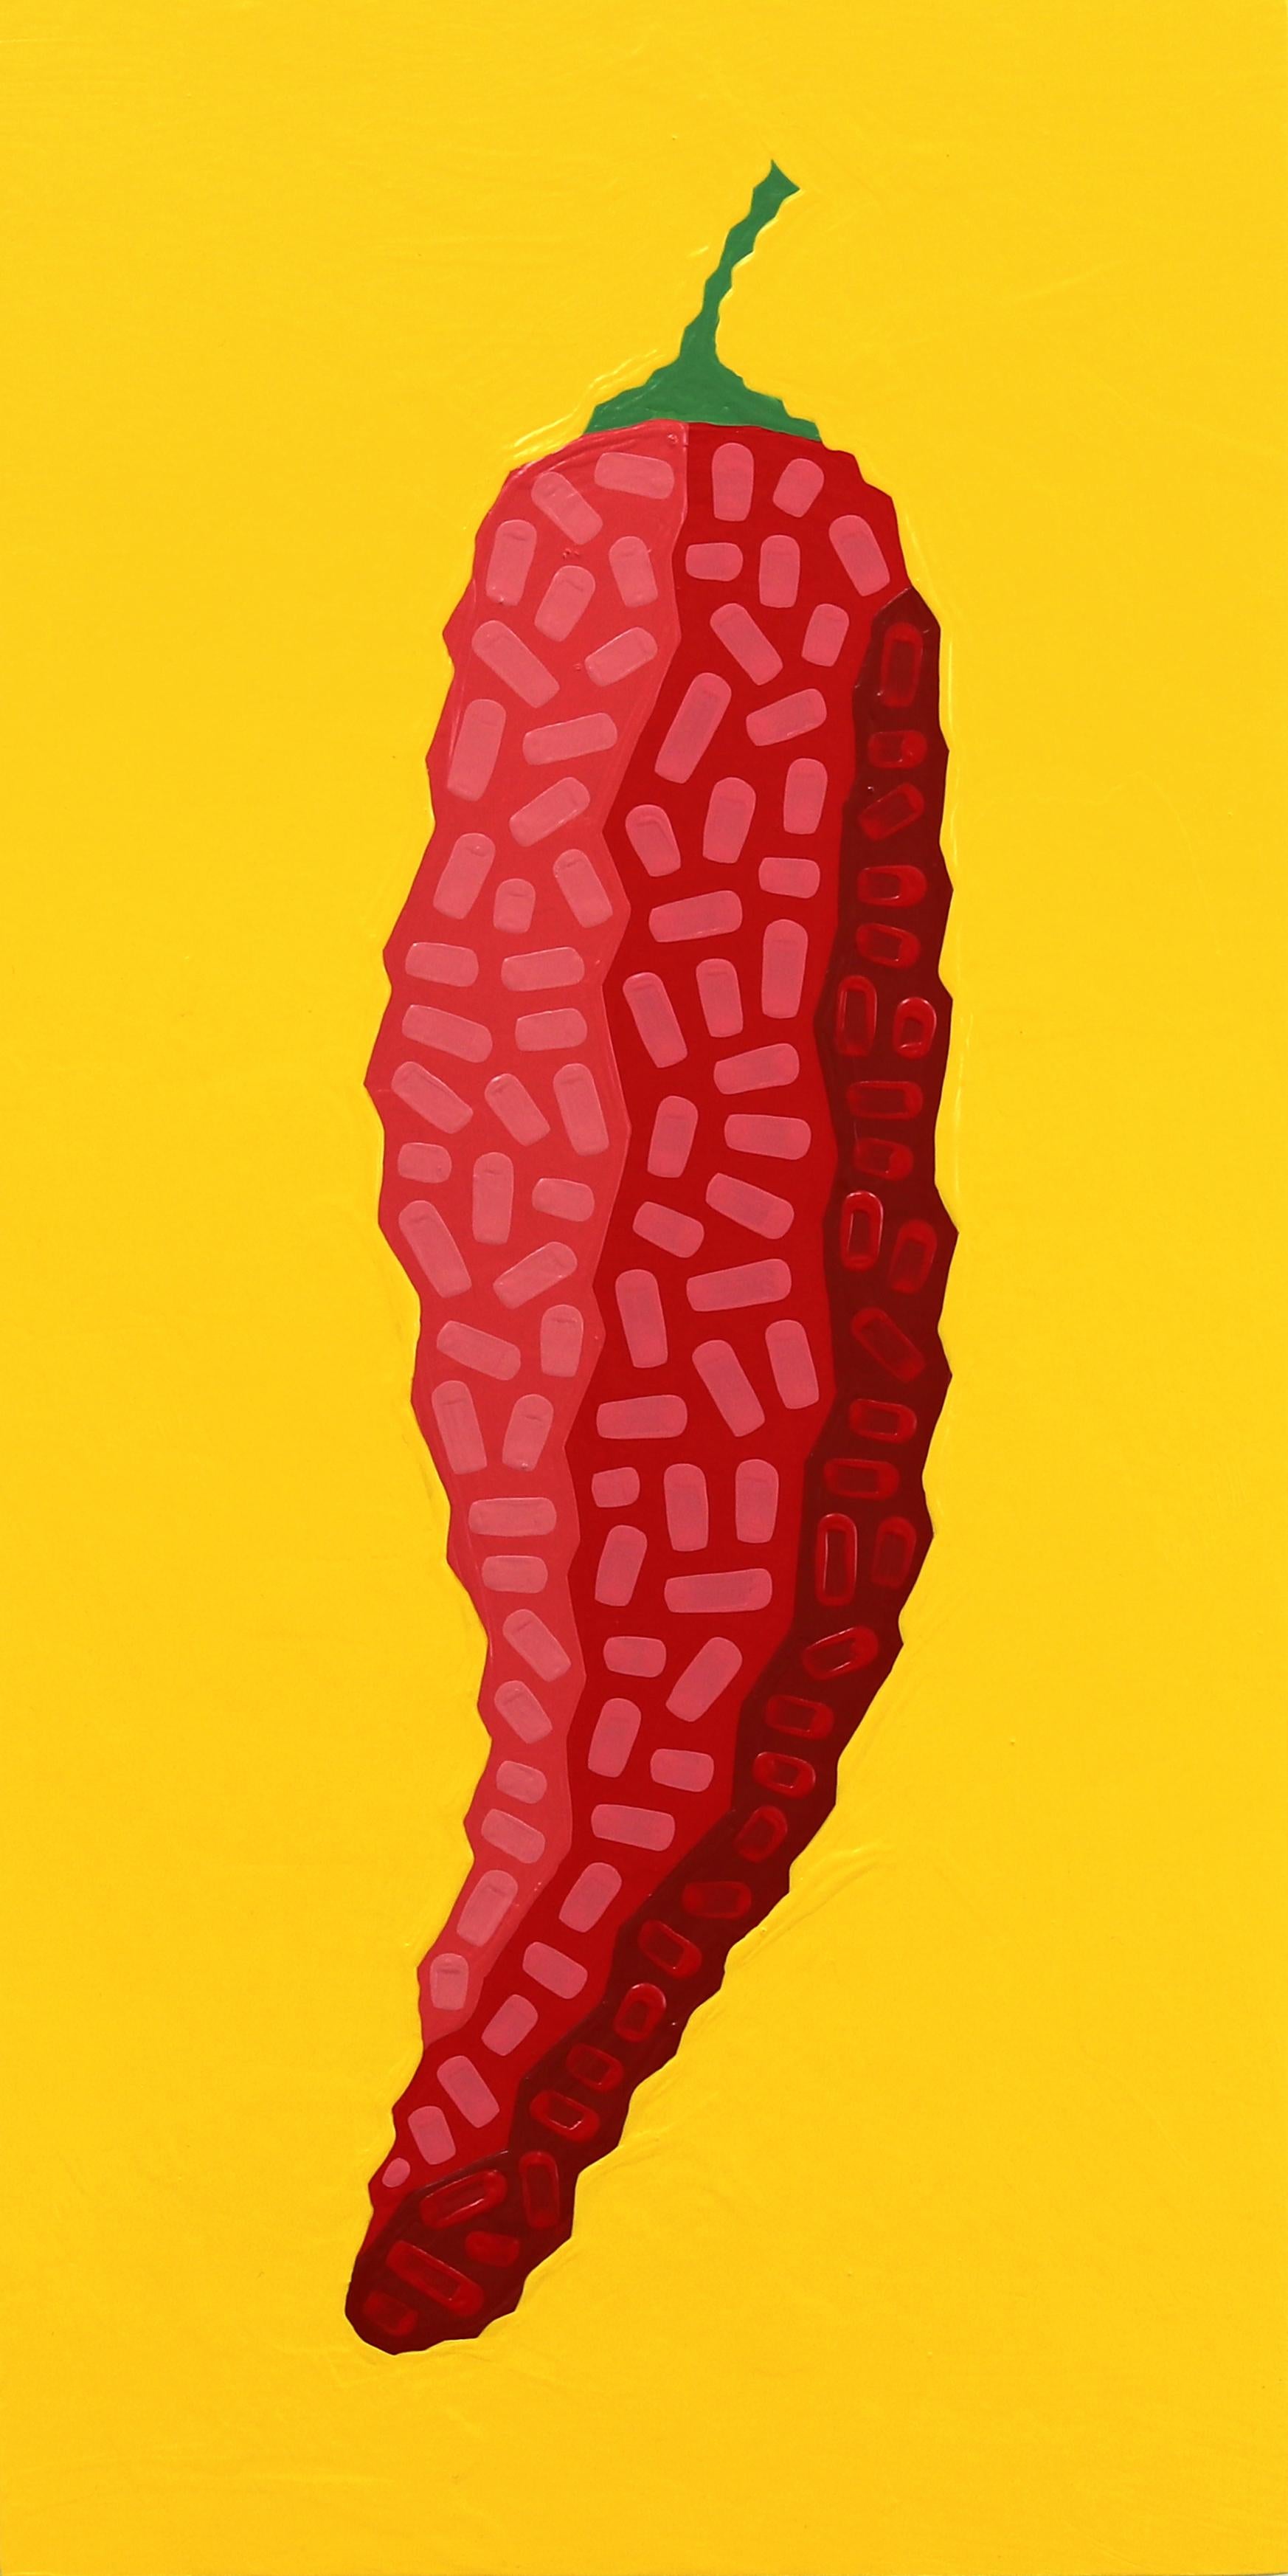 Fresno Amarillo  -  Peinture alimentaire rouge, jaune et vibrante inspirée du sud-ouest (Pop Art)